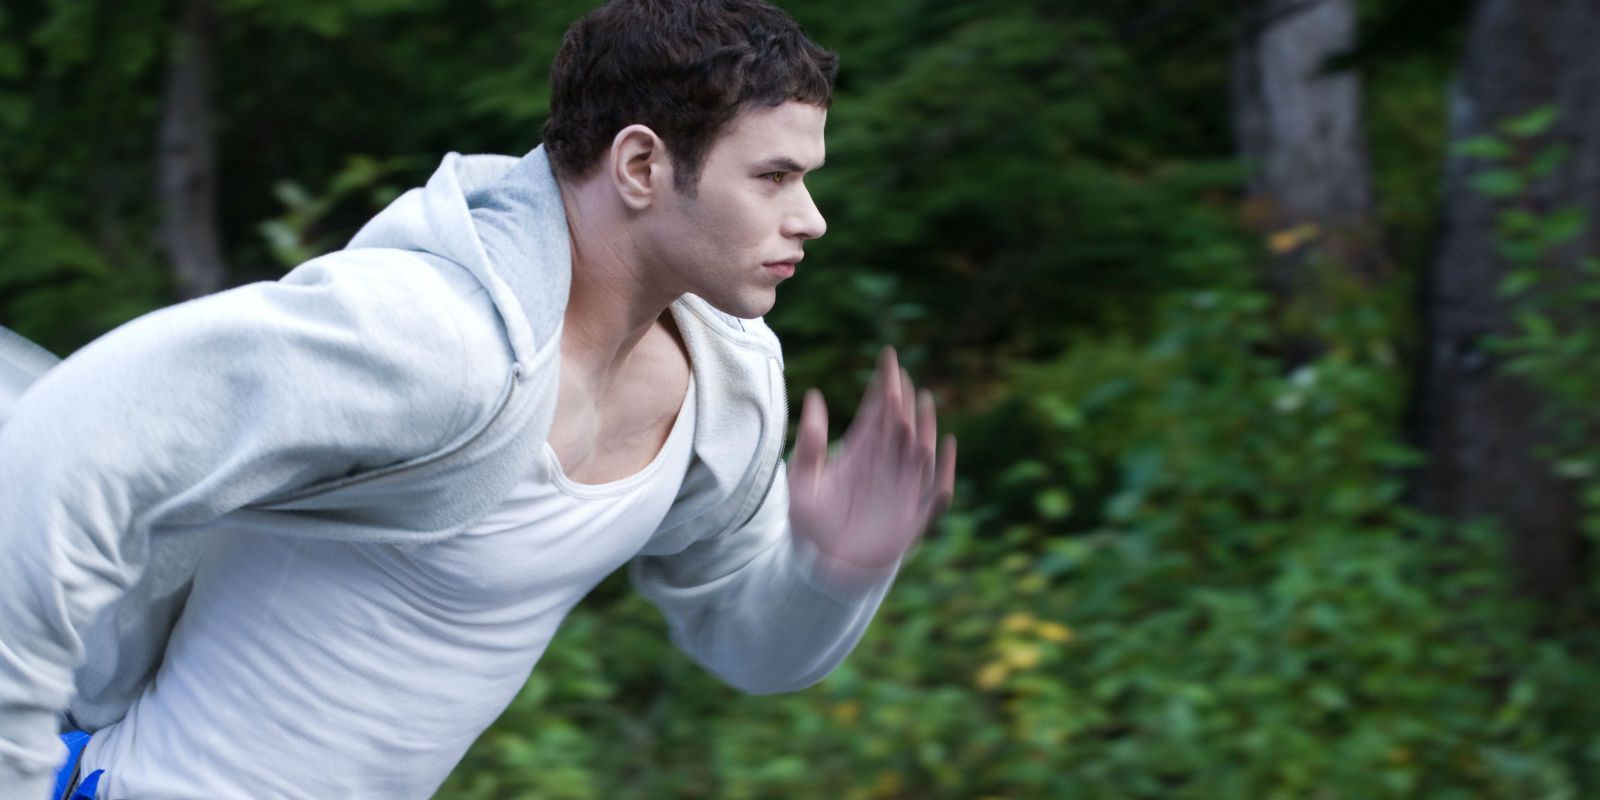 Emmett running in Twilight.